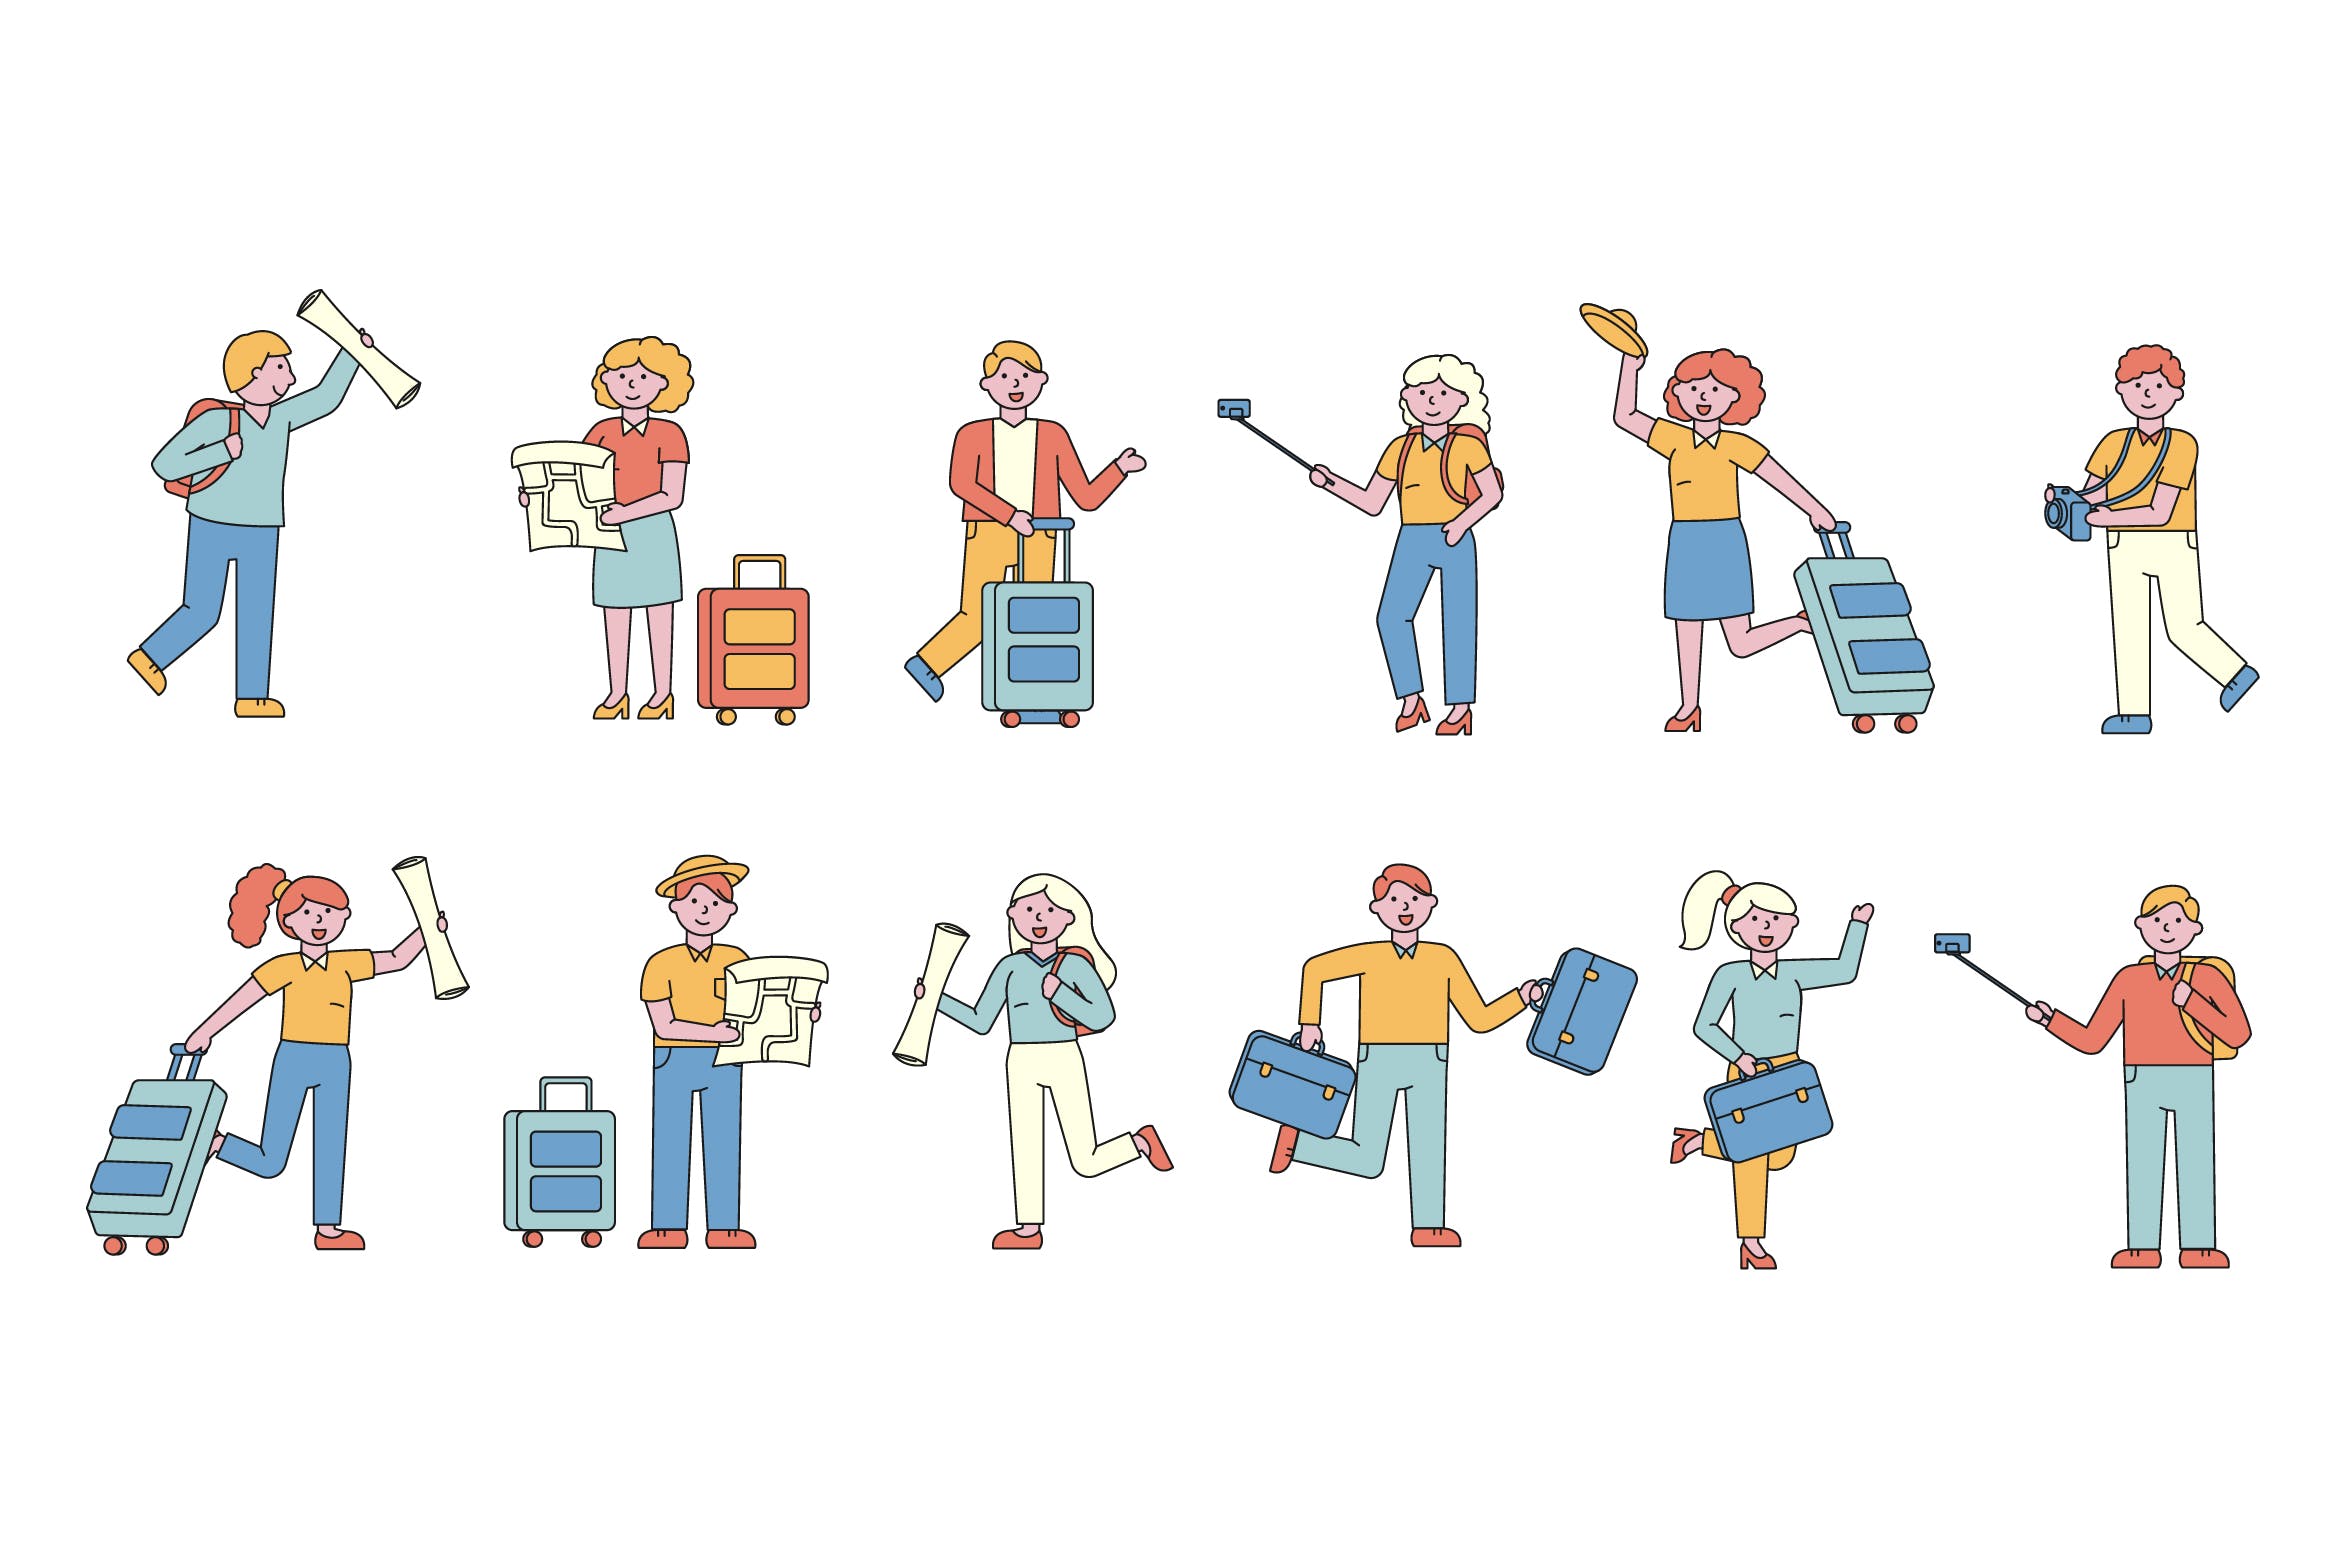 旅行人物形象线条艺术矢量插画蚂蚁素材精选素材 Tourists Lineart People Character Collection插图